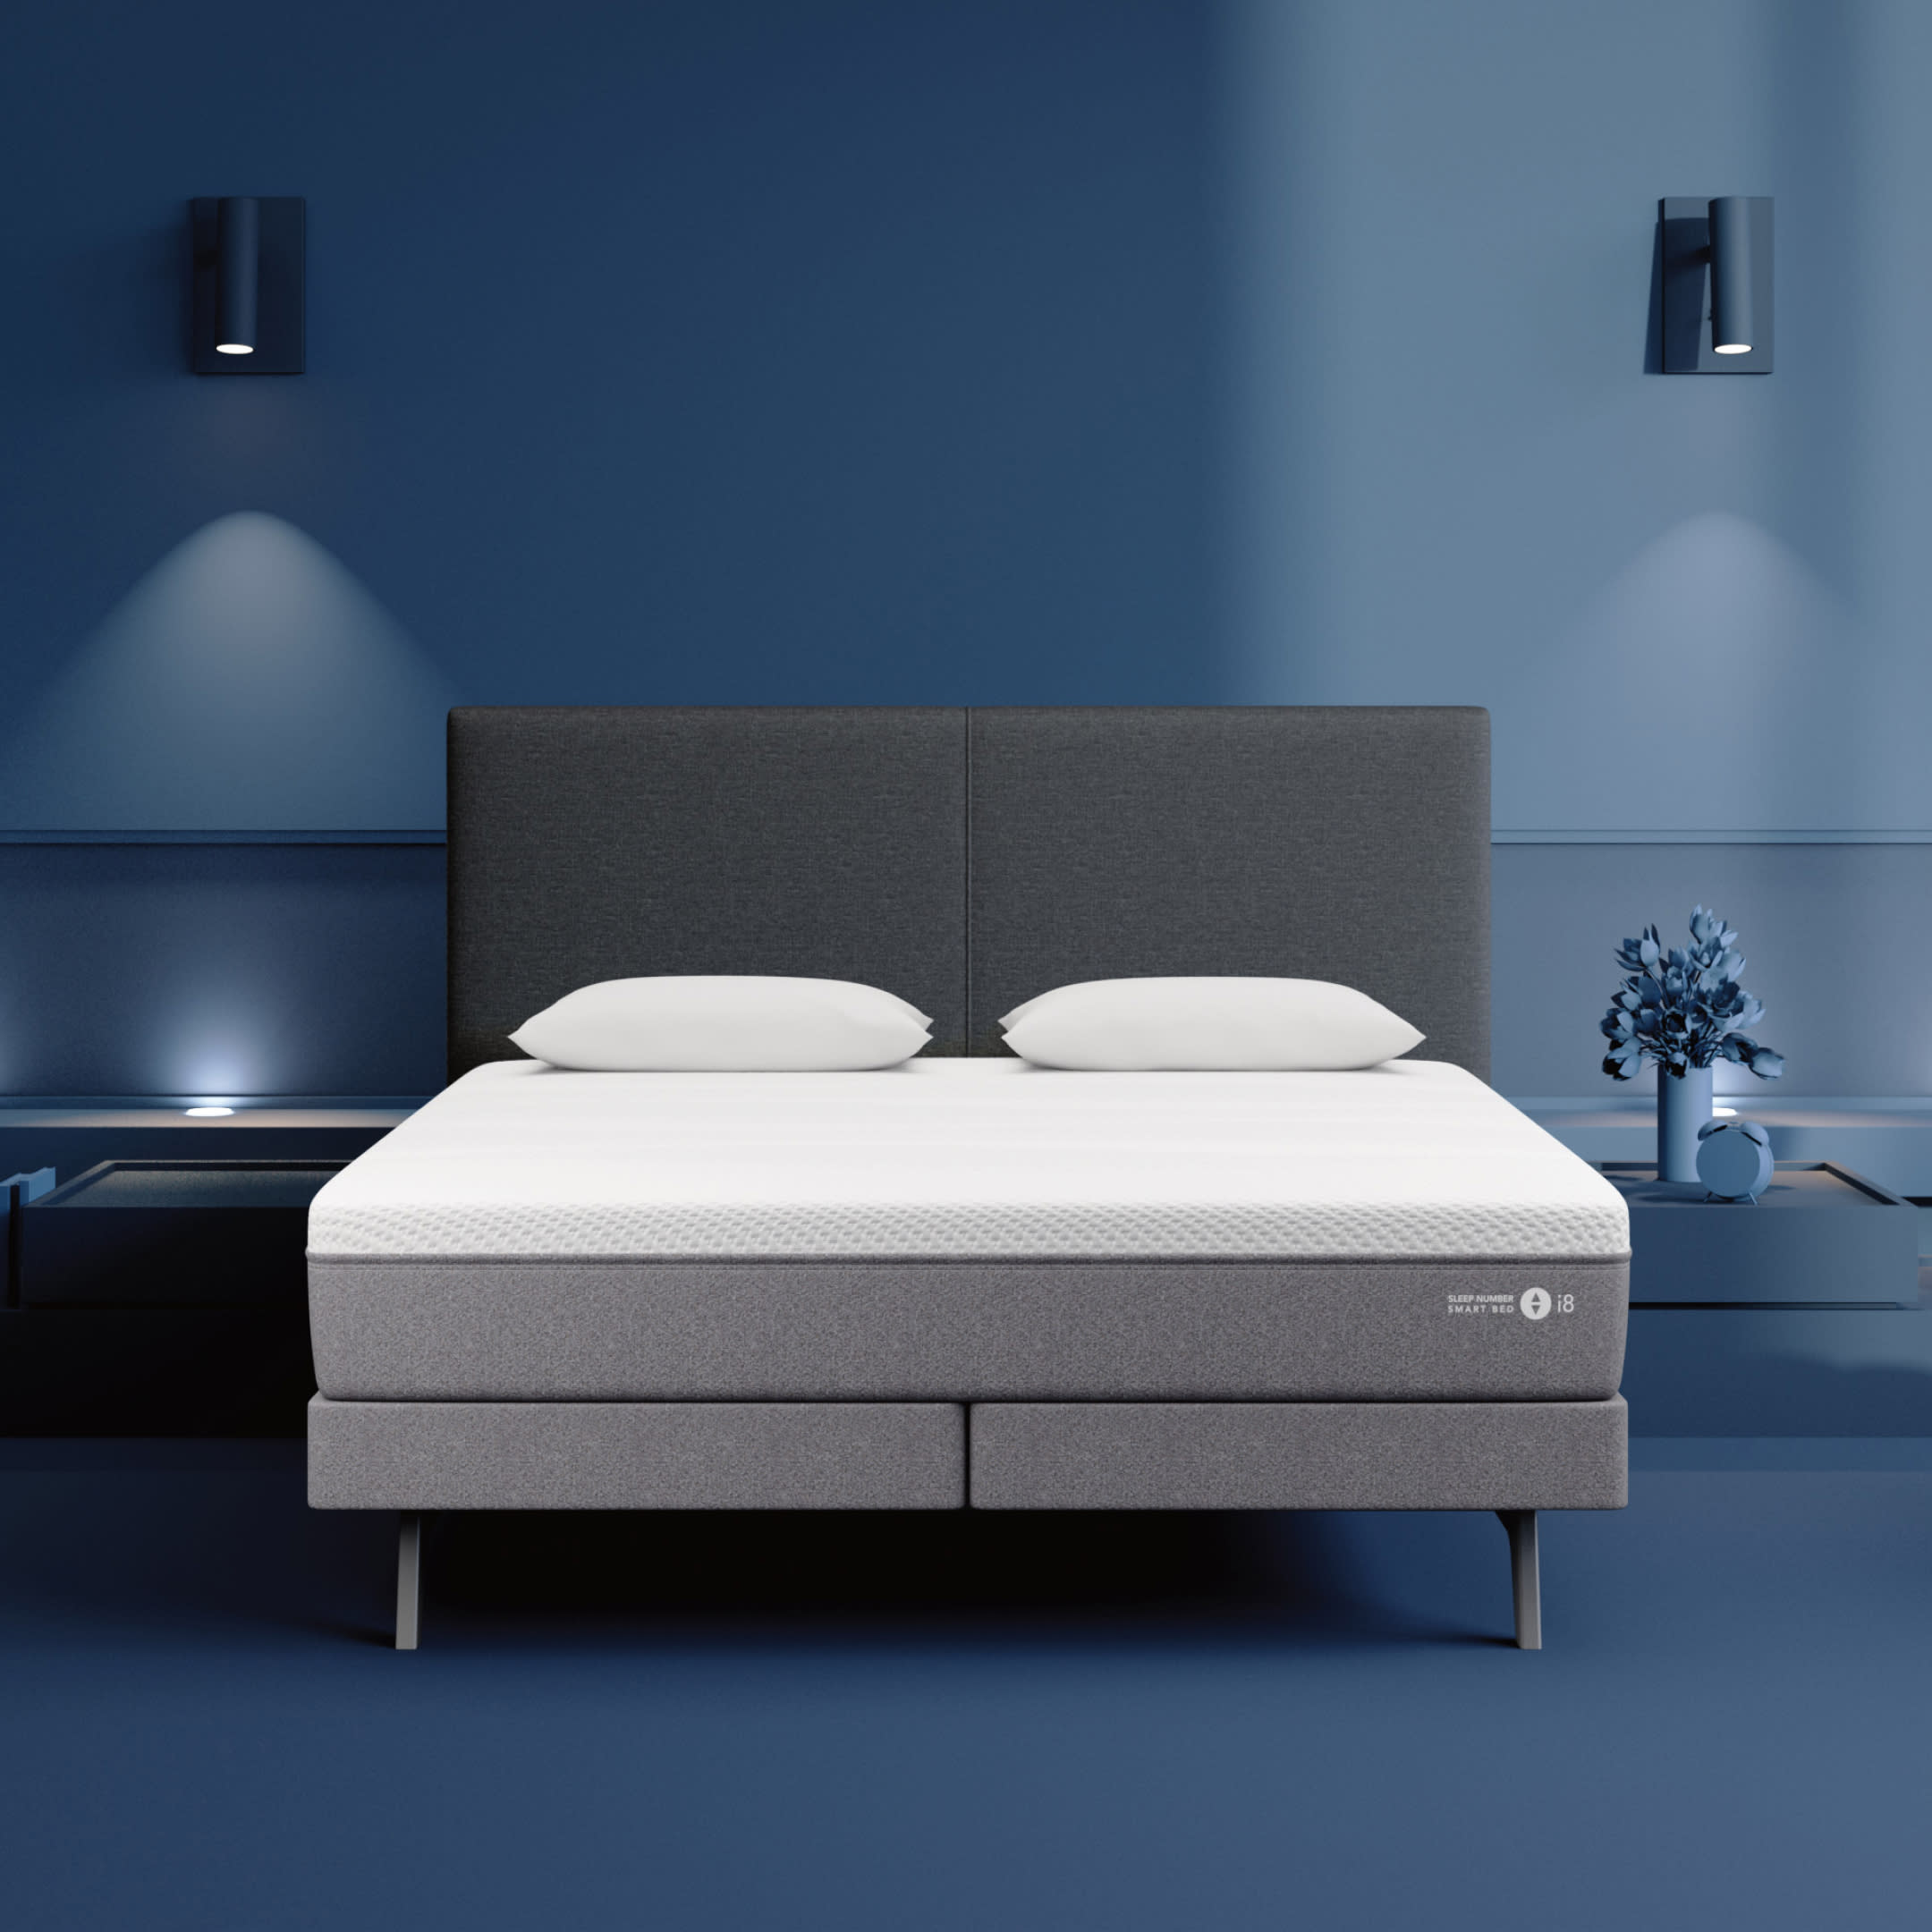 I8 Smart Bed